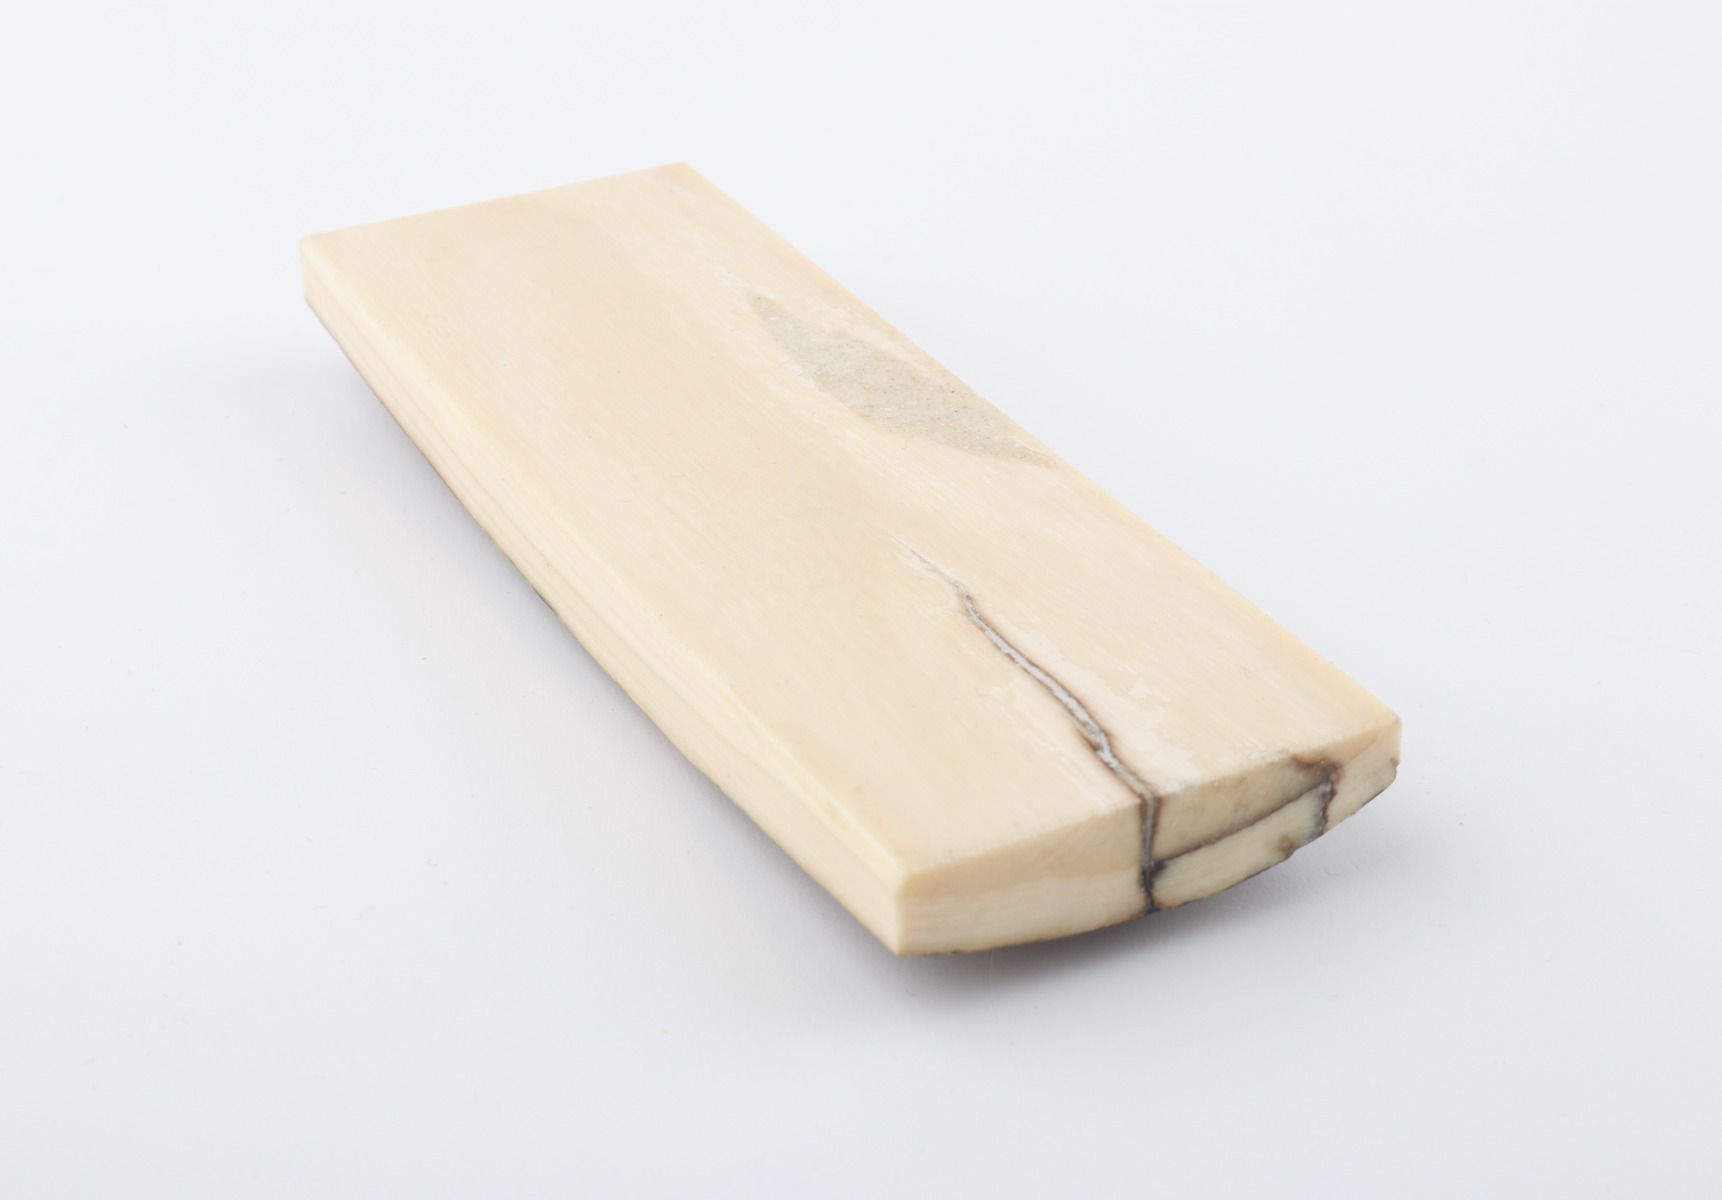 Stabilized mammoth bark piece